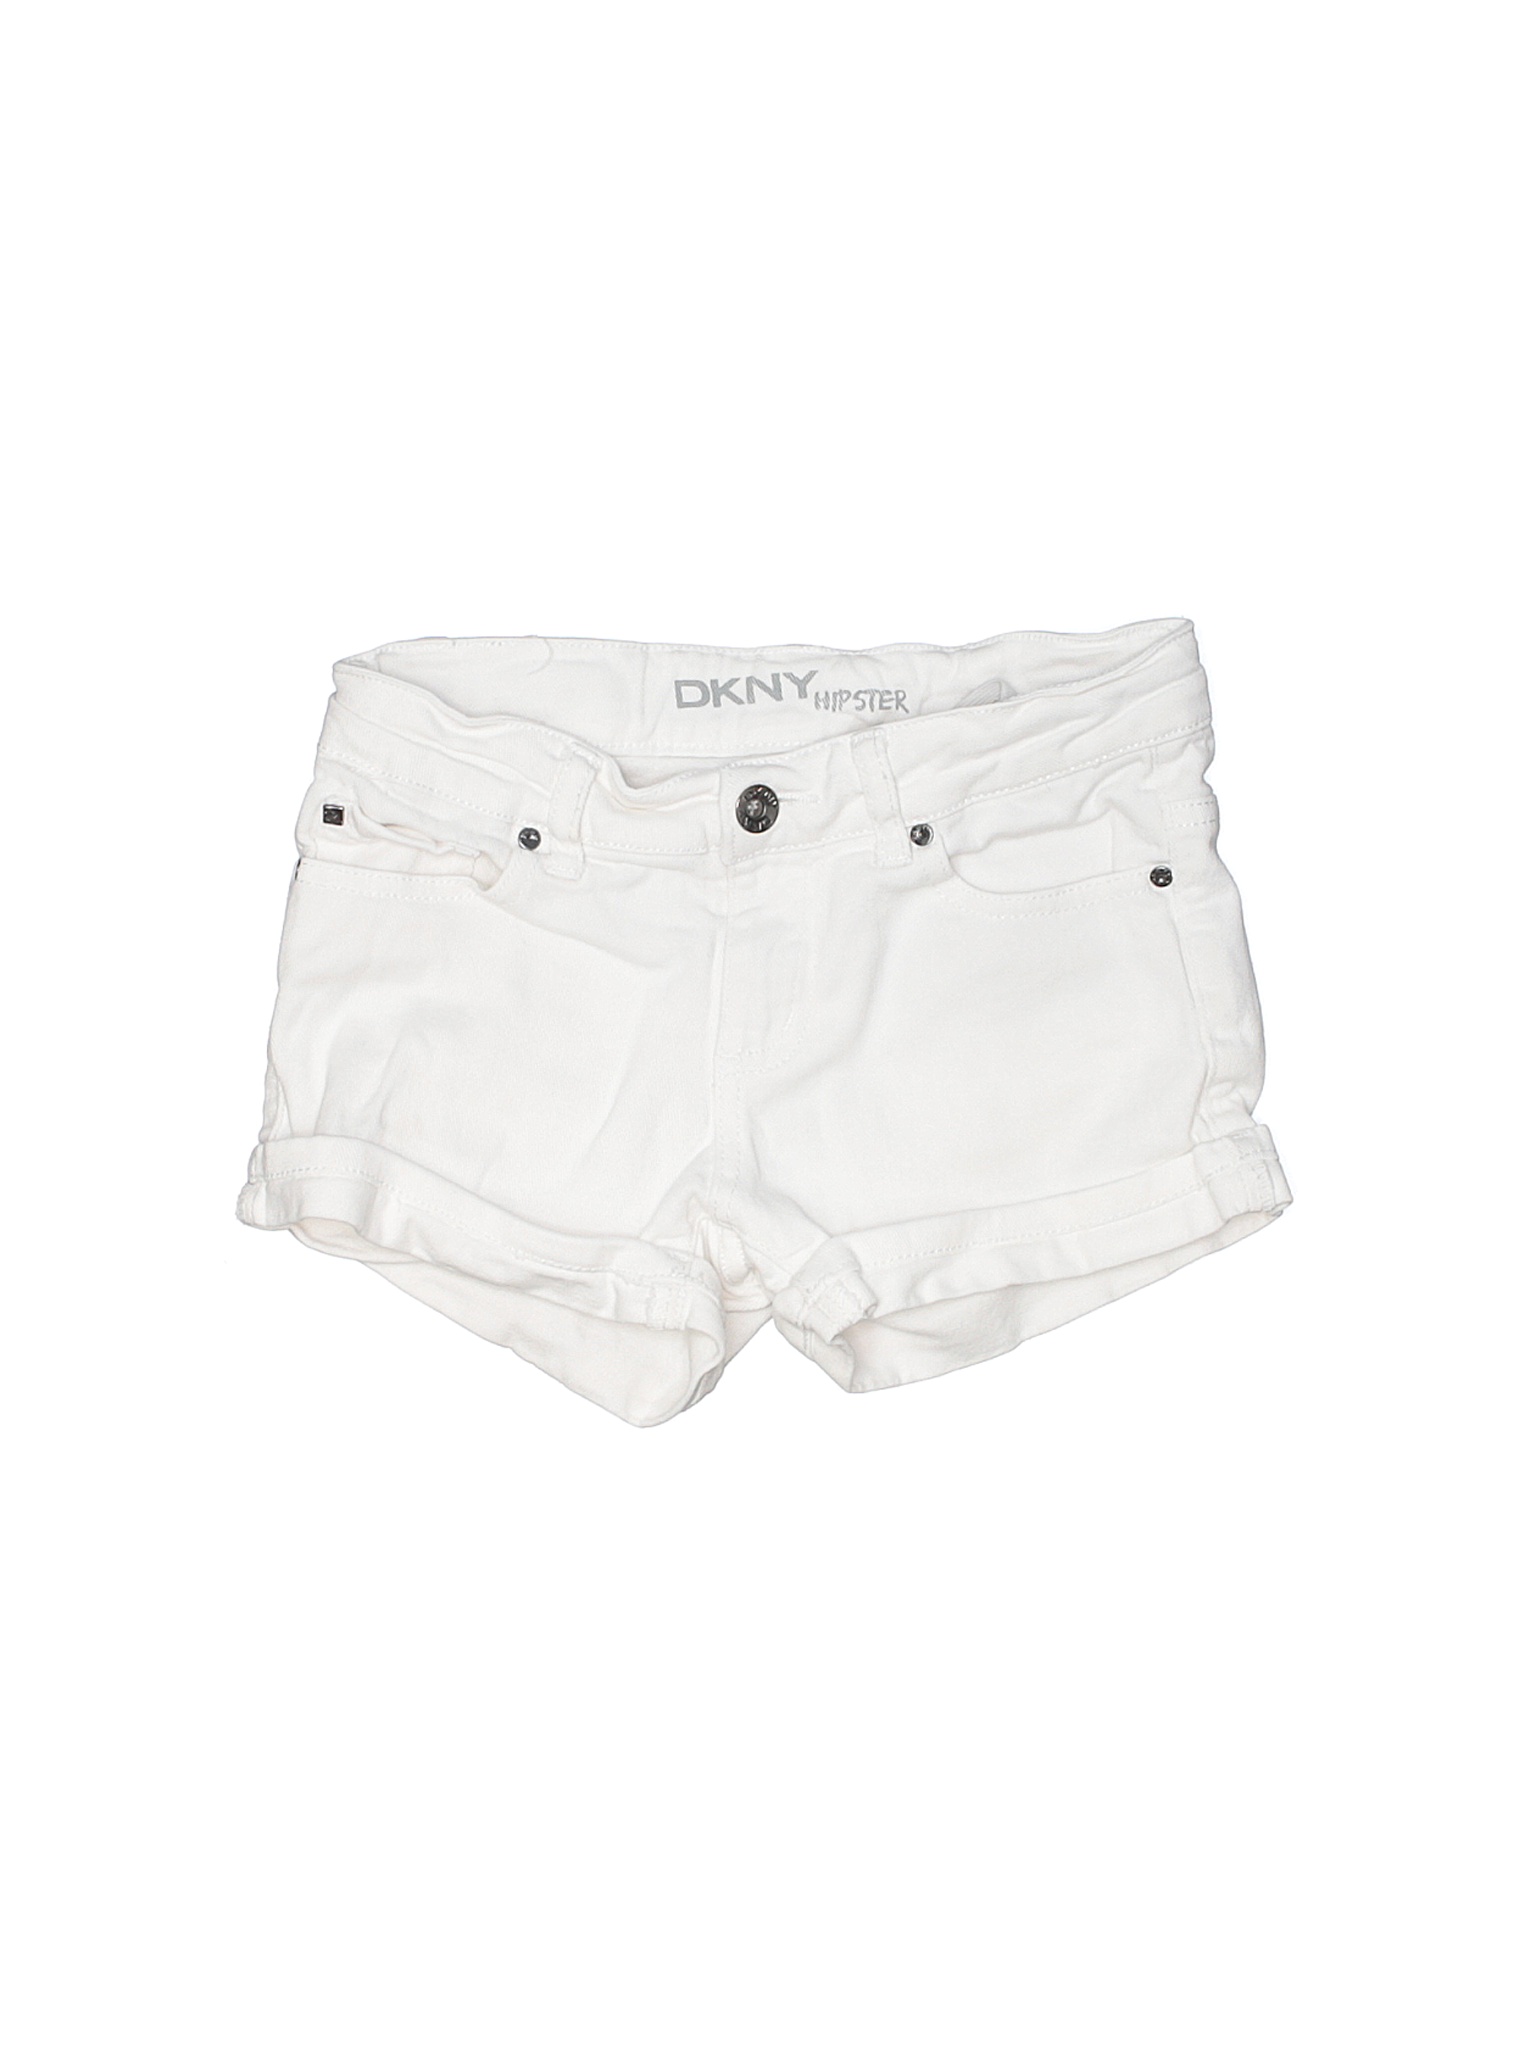 DKNY Girls White Denim Shorts 8 | eBay